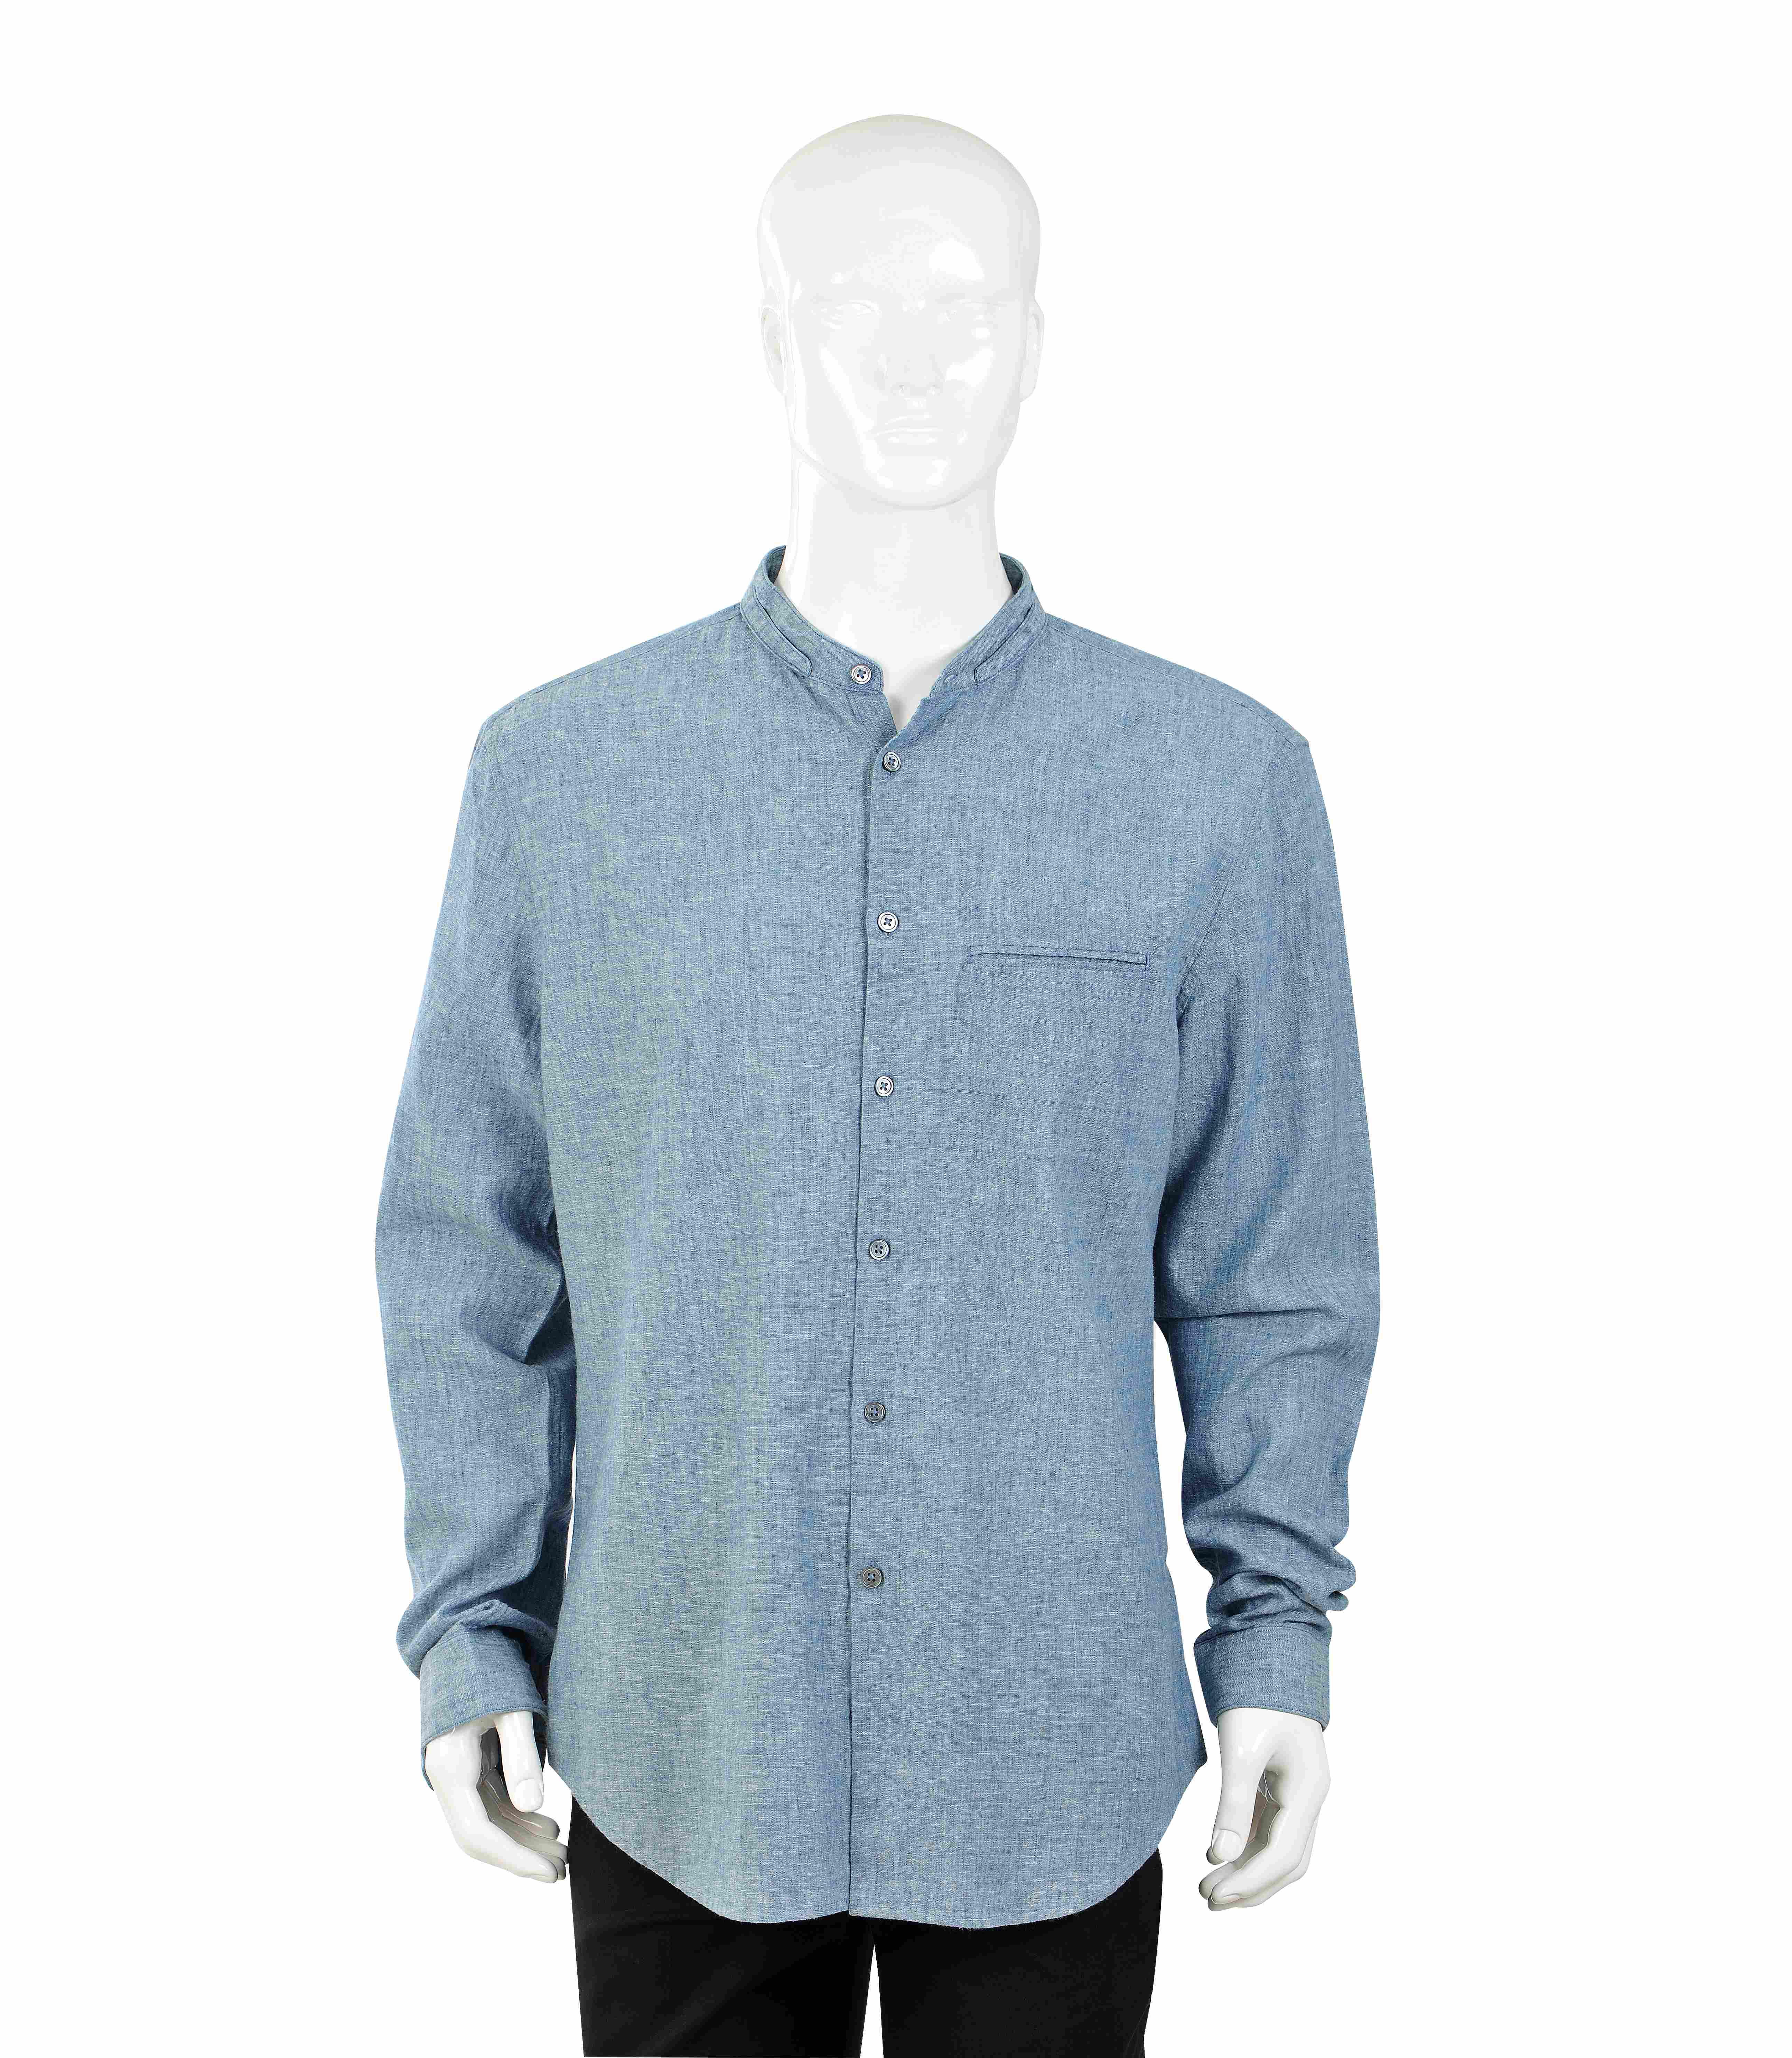 Men's classic business long sleeve woven shirt